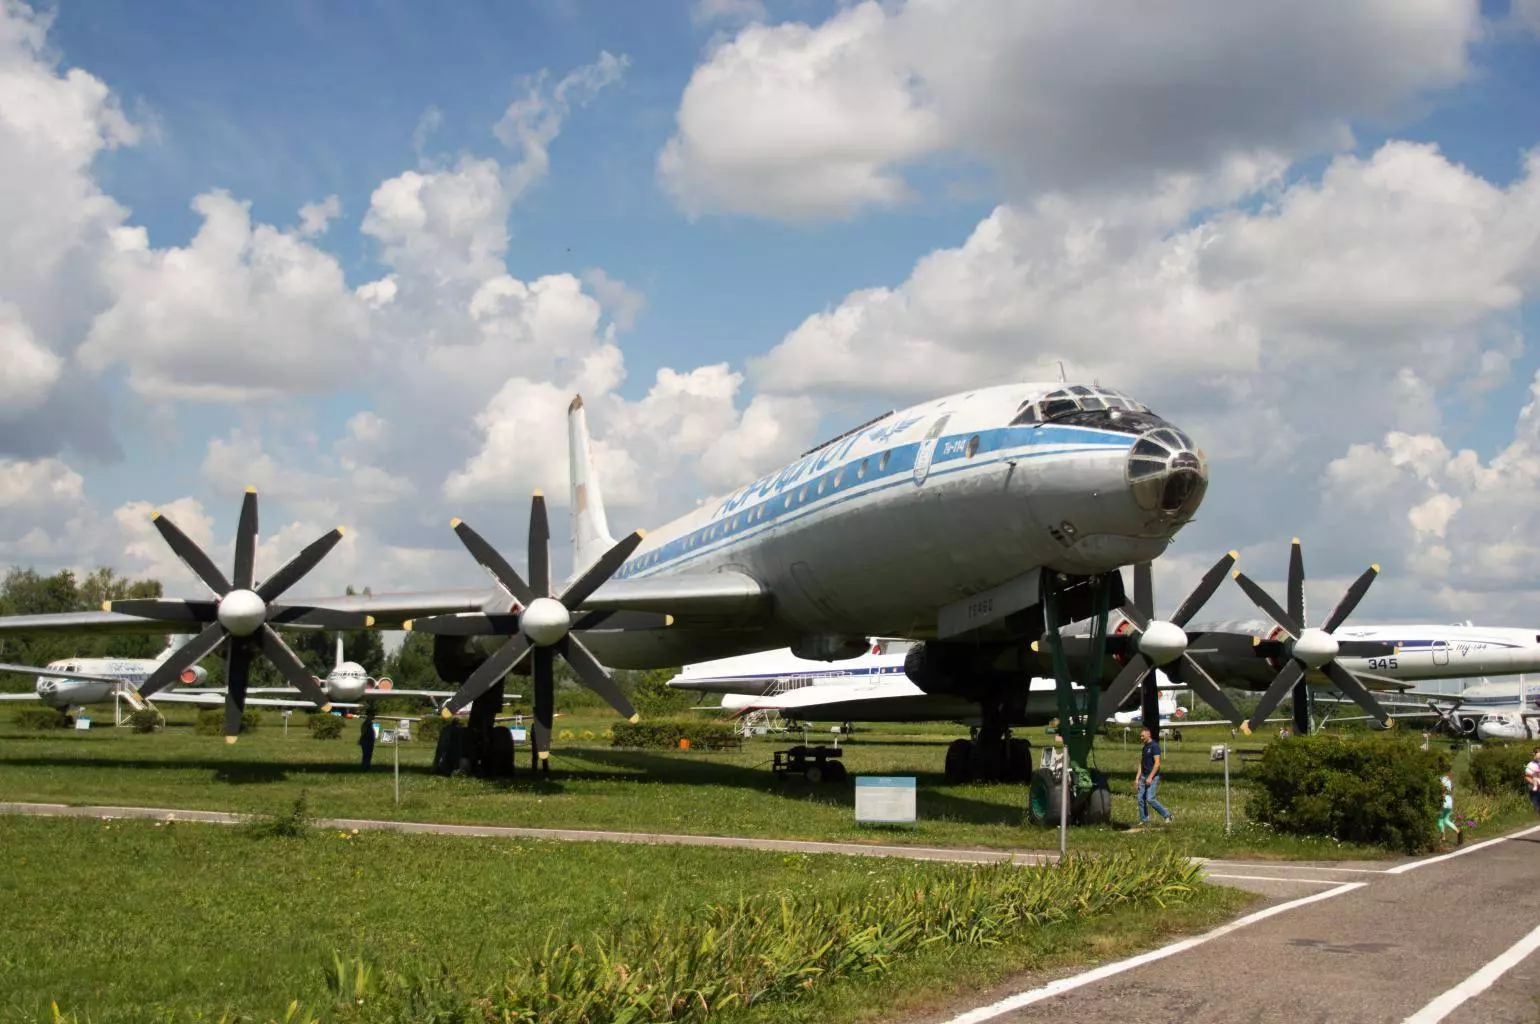 Музей гражданской авиации в ульяновске